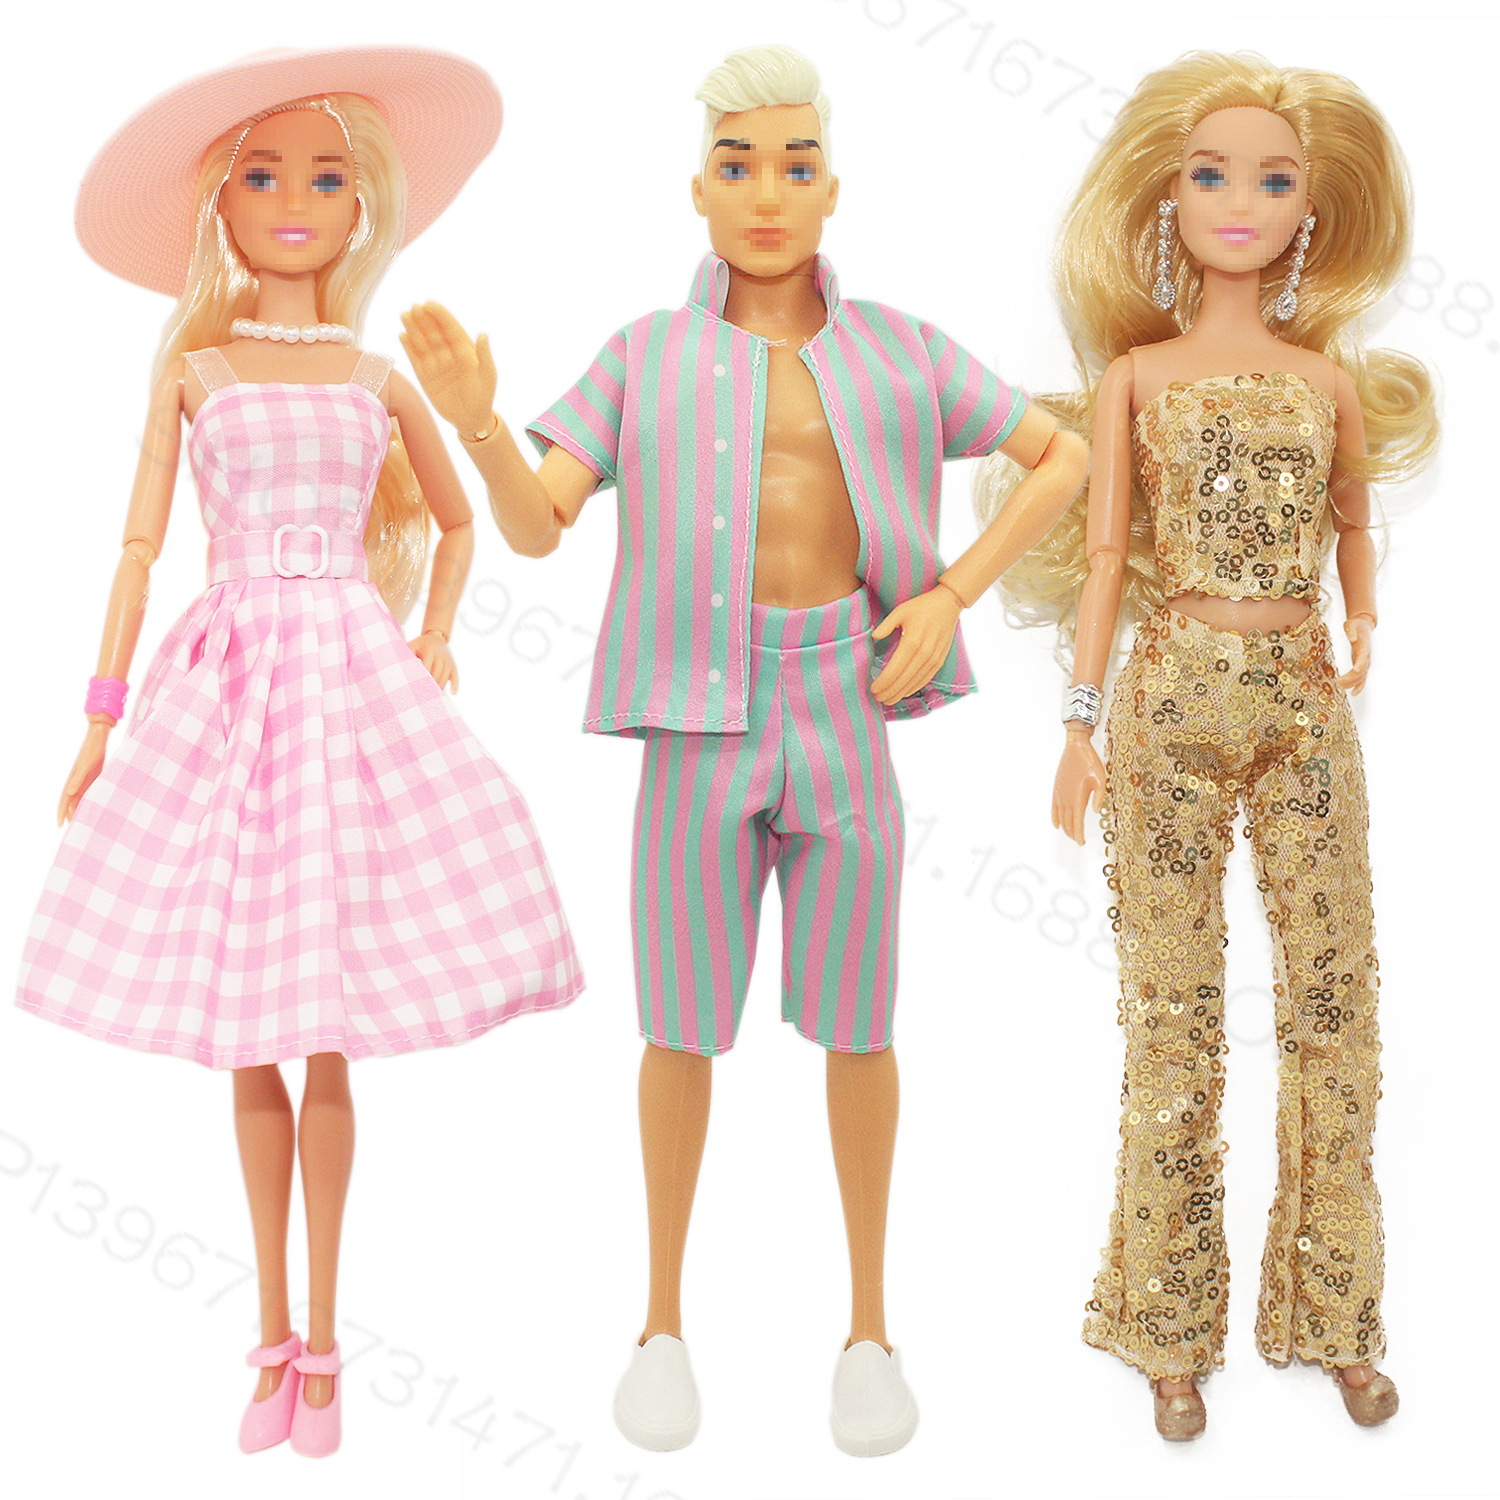 巴比娃娃电影同款新款玩具公主情侣娃娃套装环保外贸热销洋娃娃